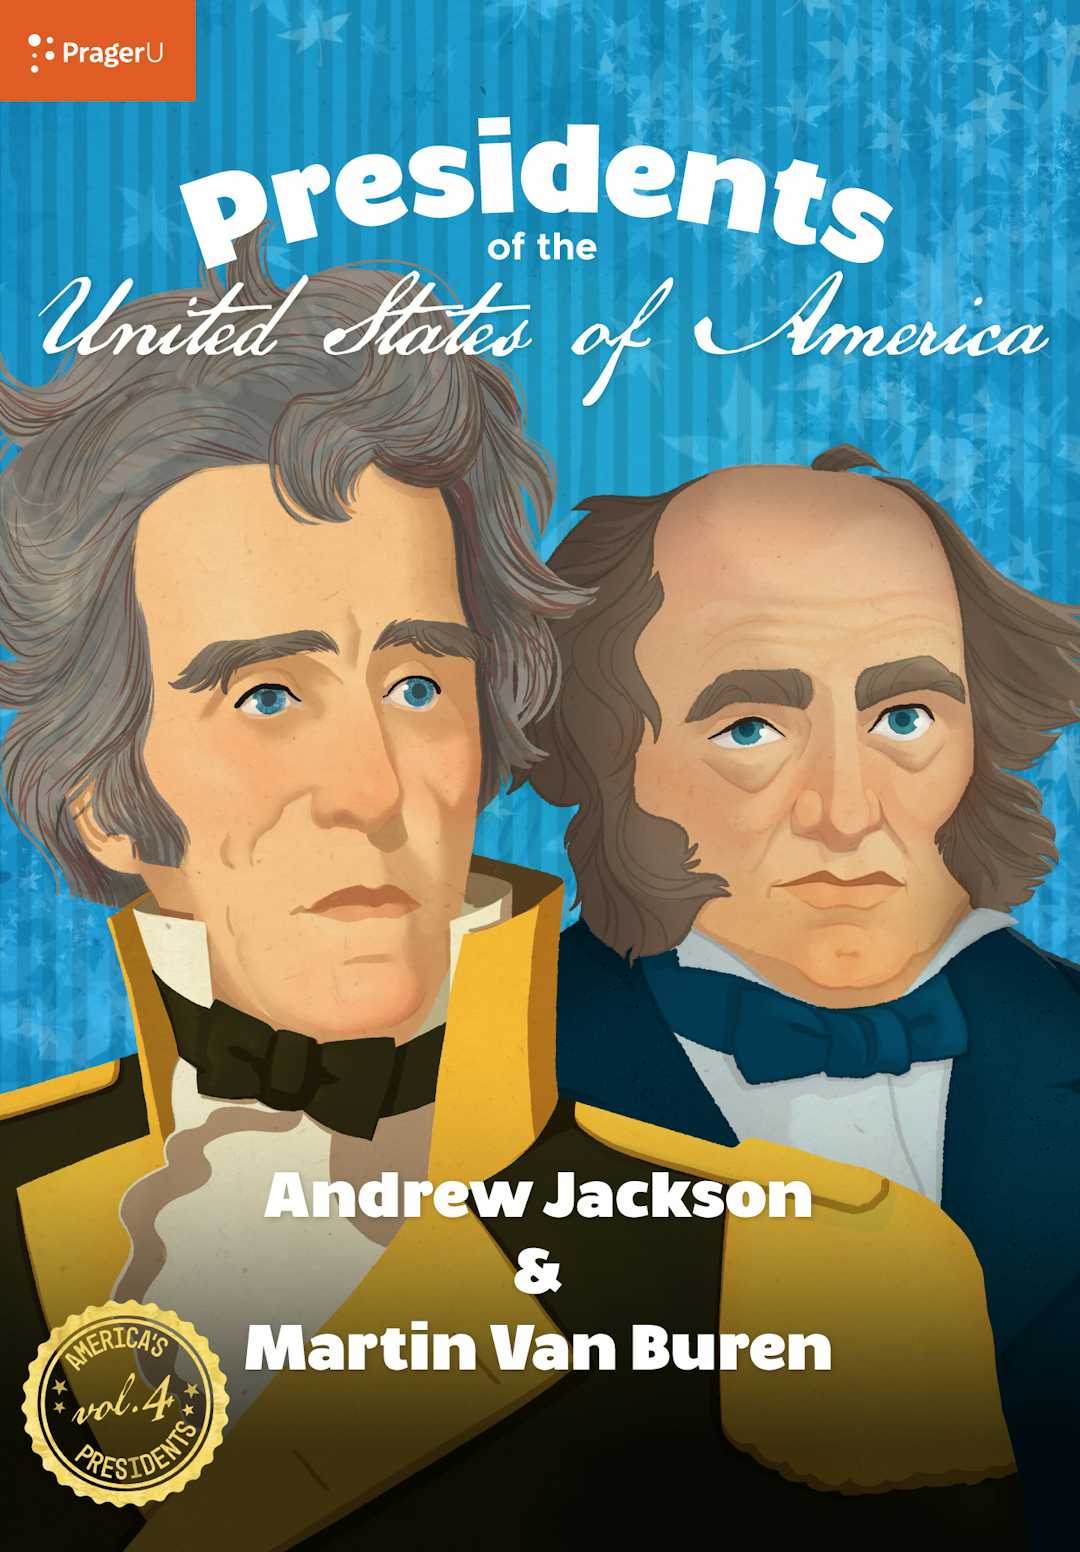 U.S. Presidents Volume 4: Andrew Jackson & Martin Van Buren